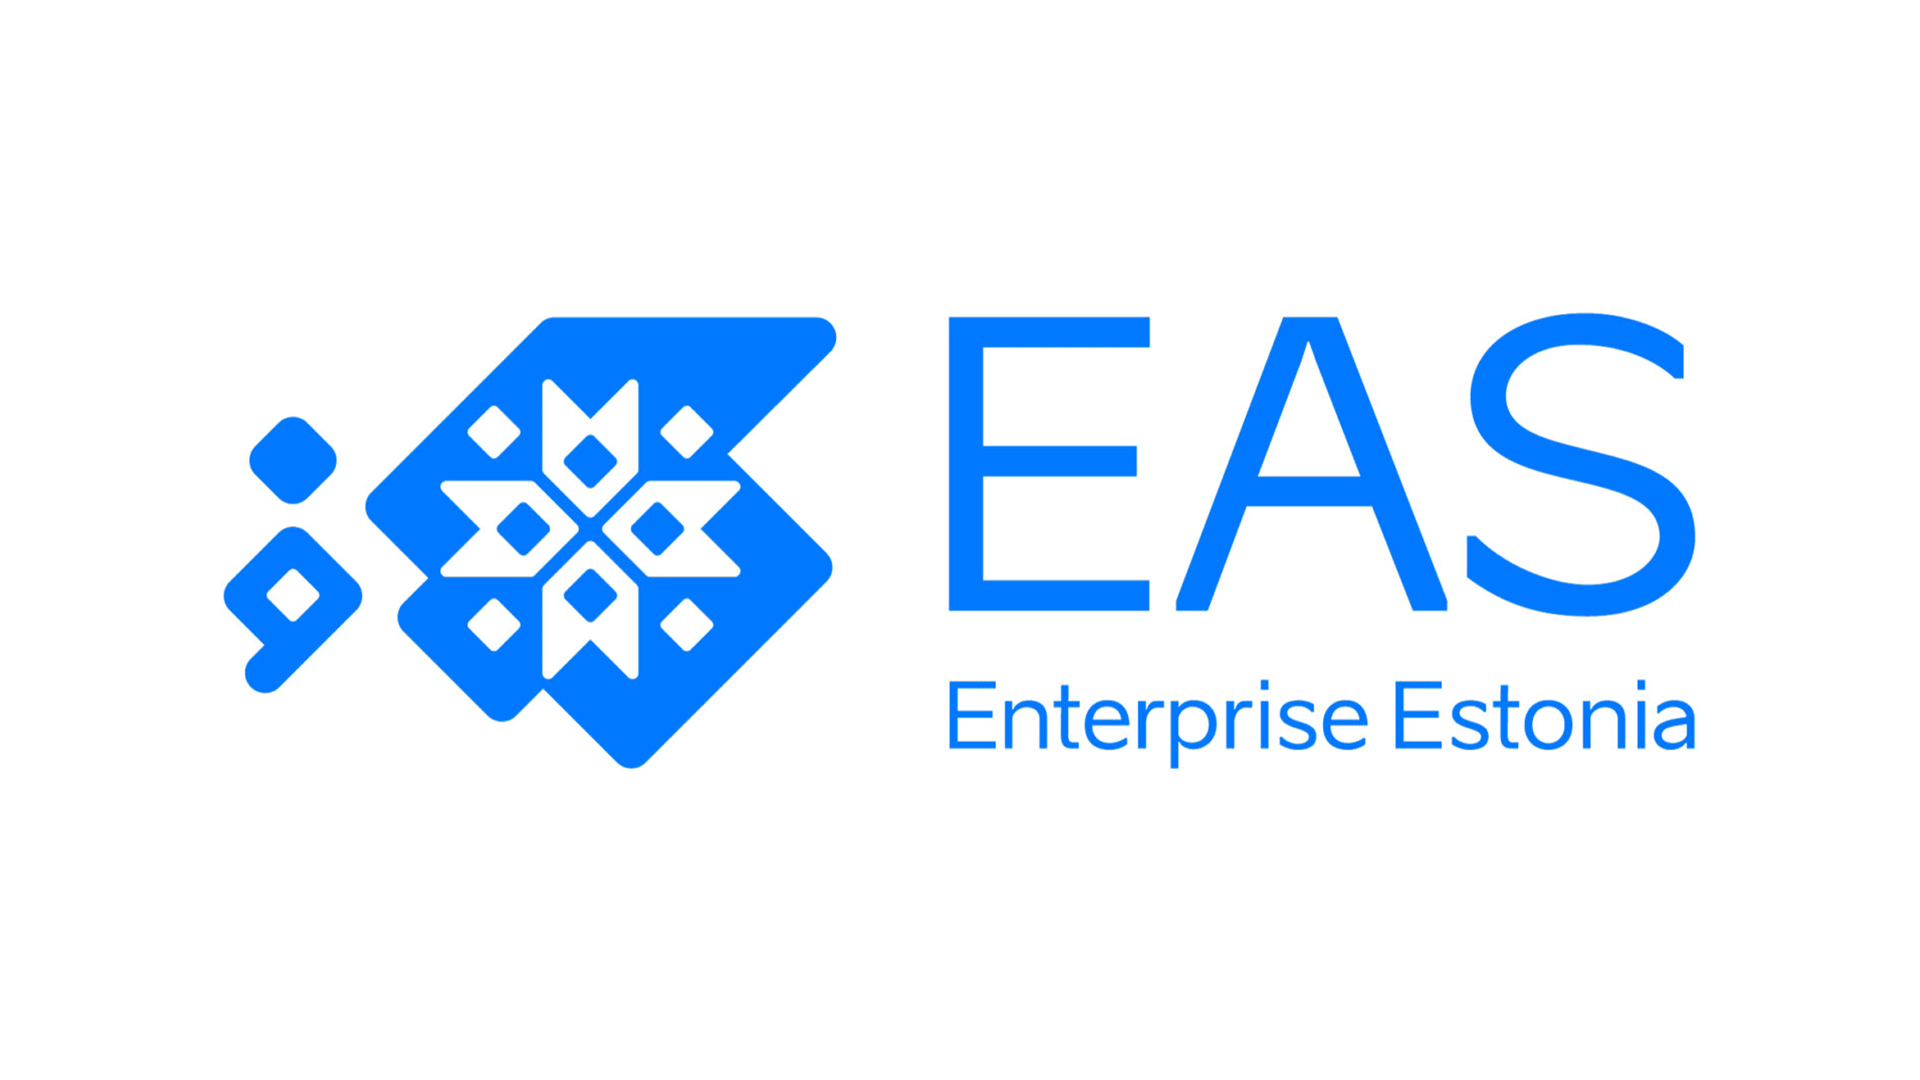 該標誌用於推廣企業和/或促進公民互動，並代表著愛沙尼亞的創新形象和對數字基礎設施的投資。